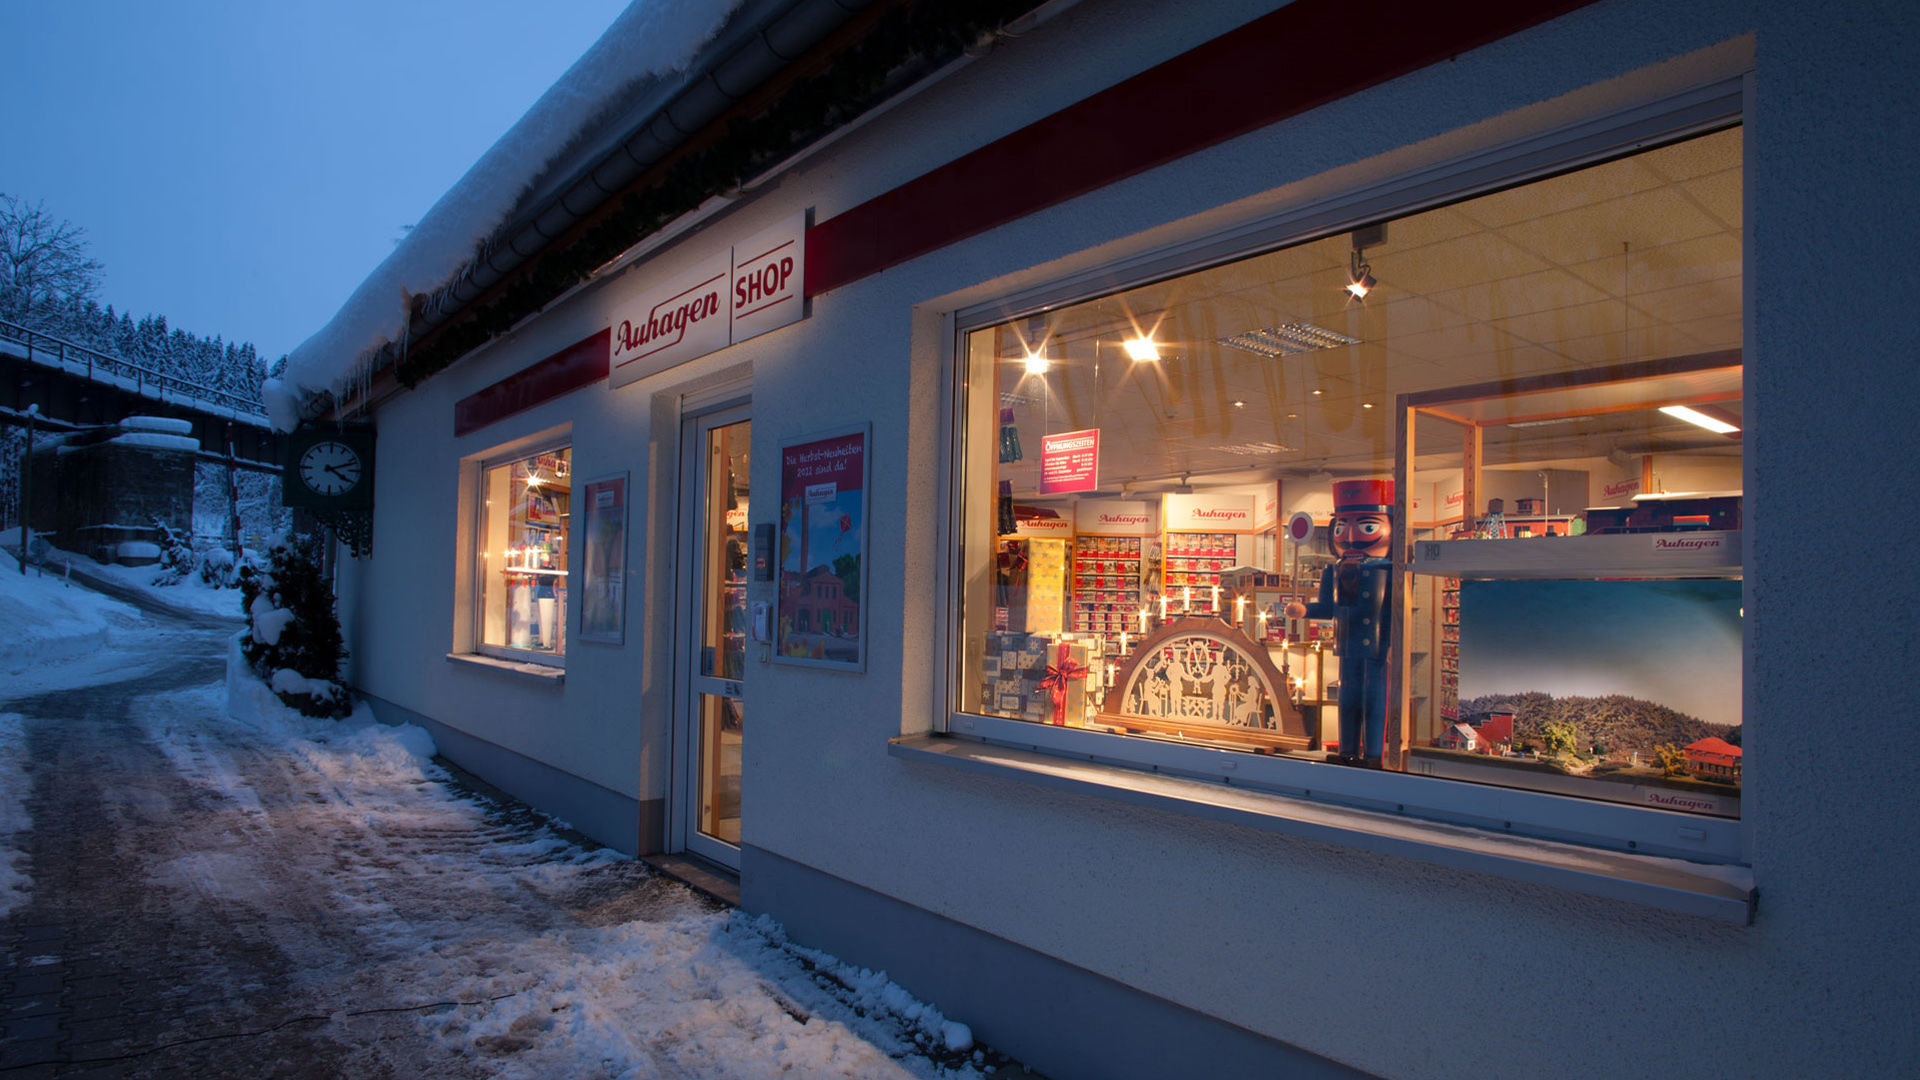 Auhagen-Shop im Winter 
© Auhagen GmbH